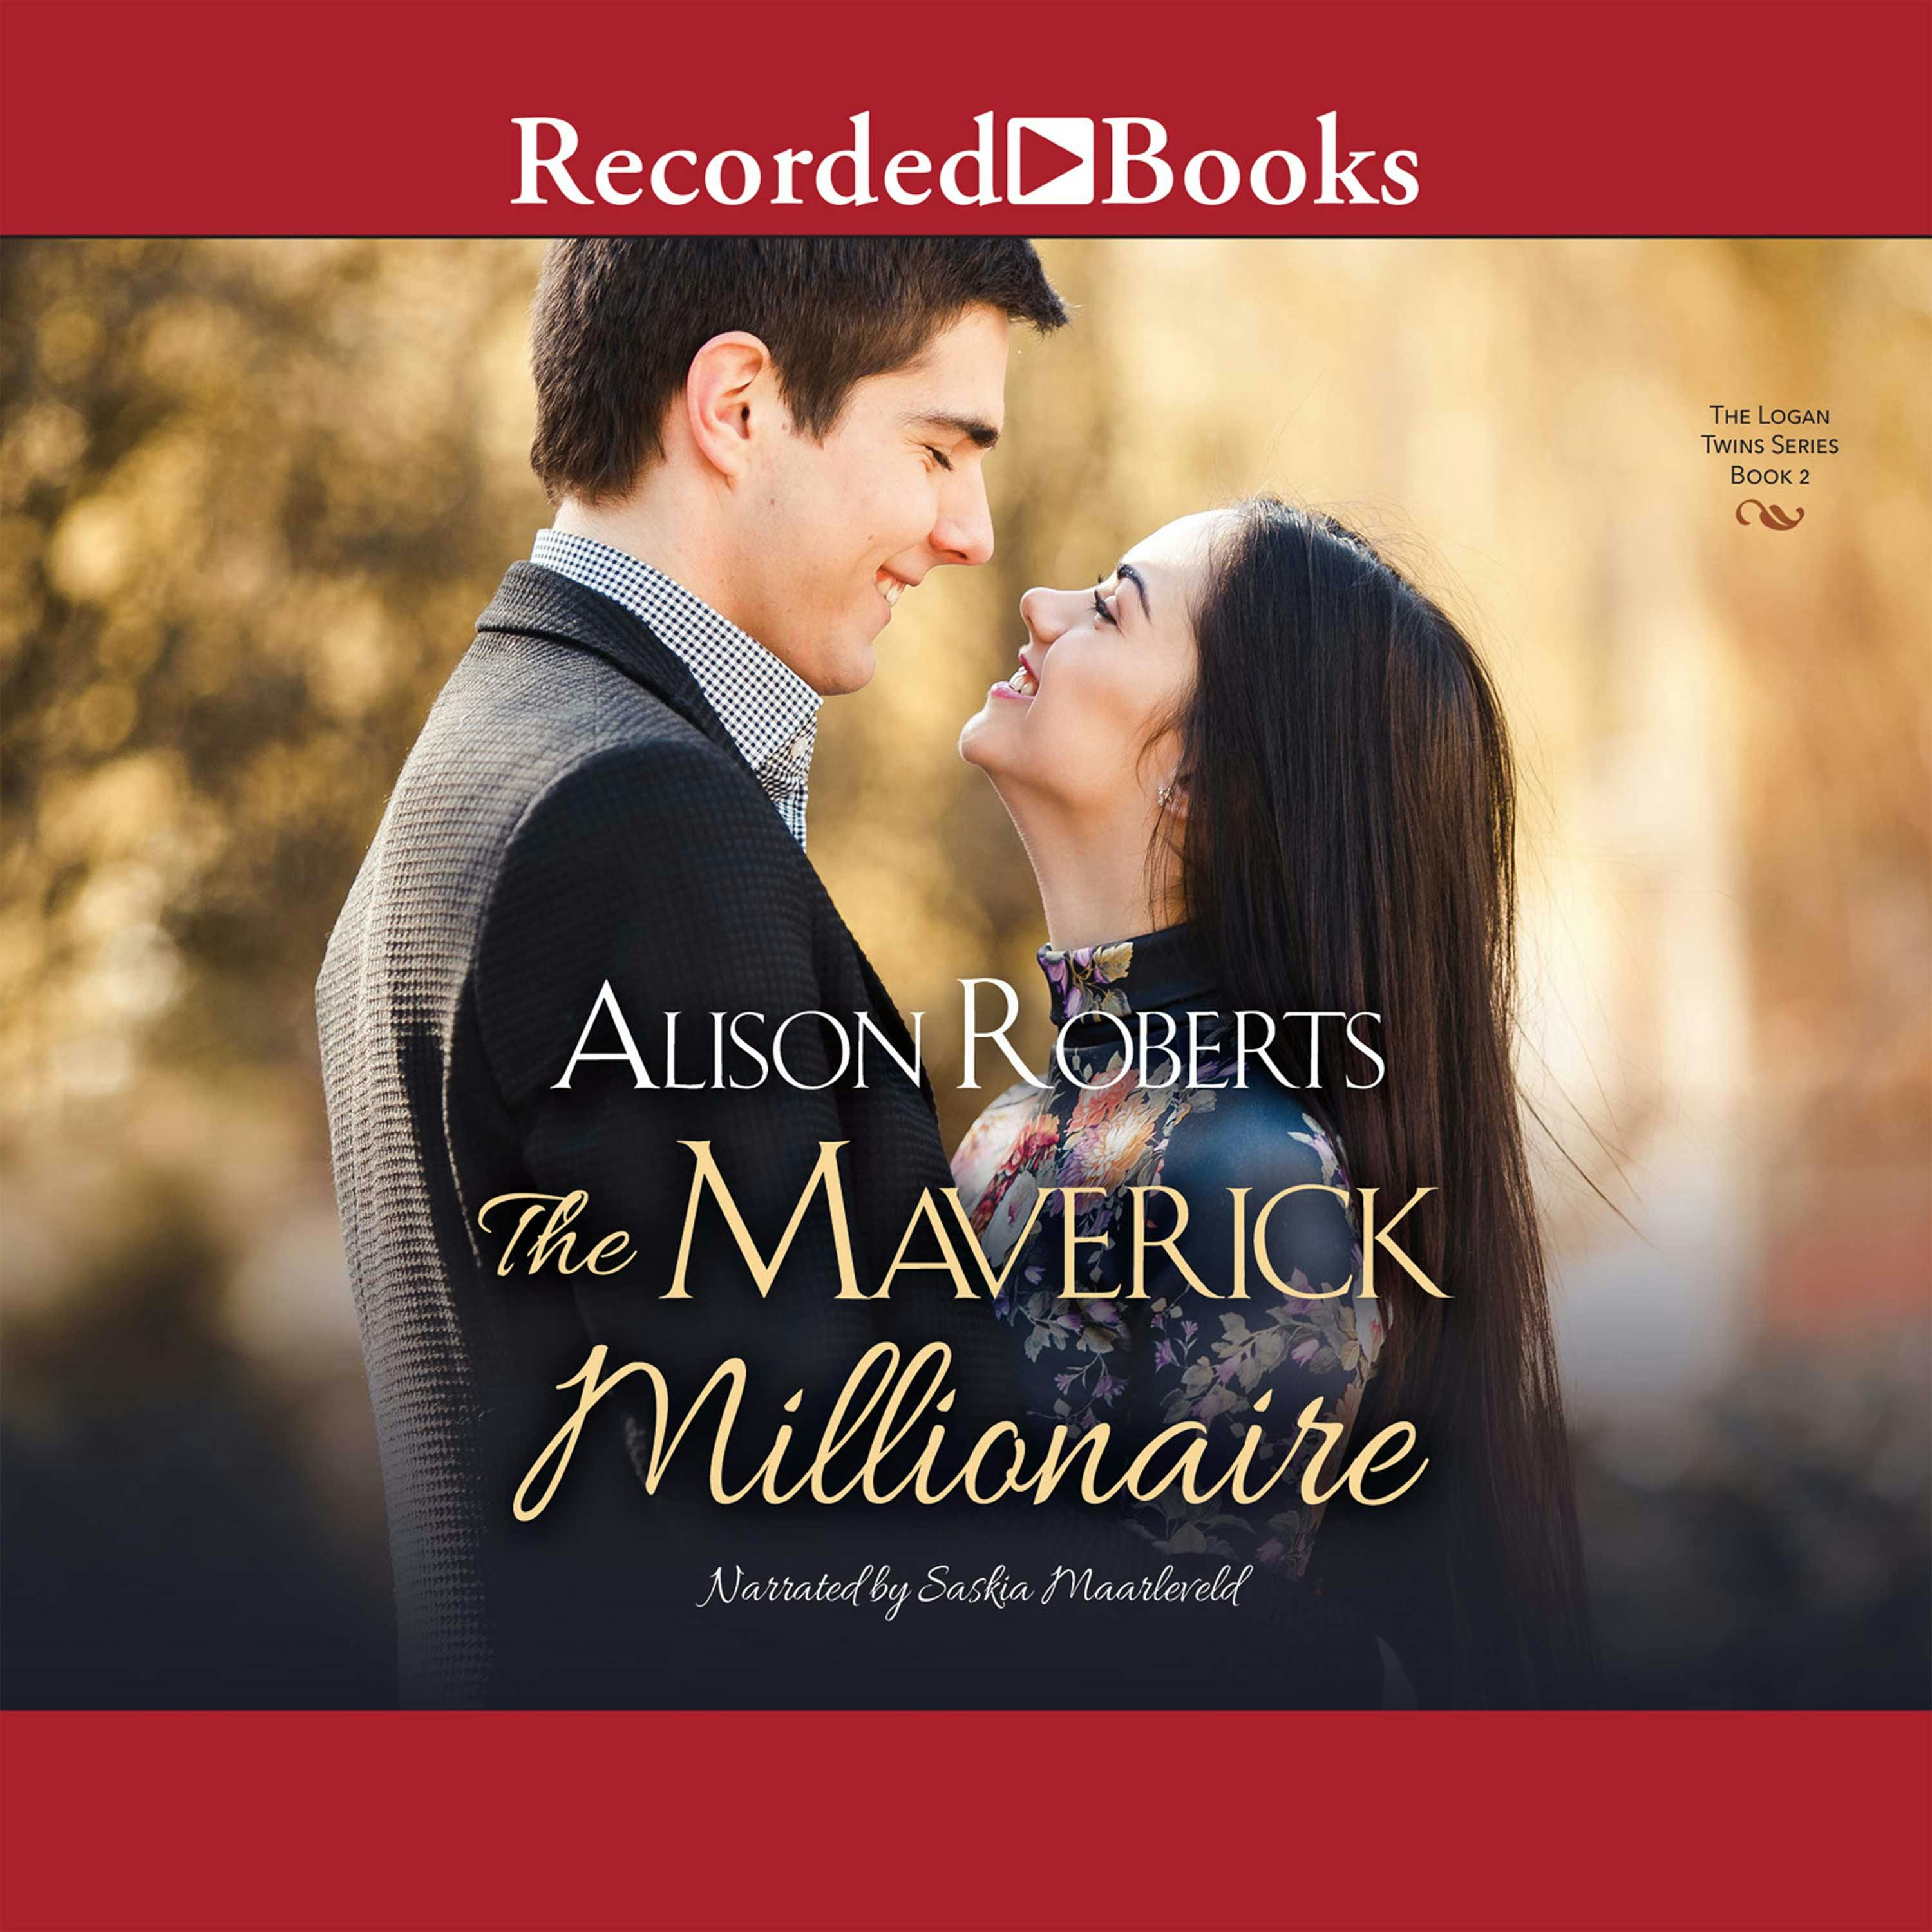 The Maverick Millionaire - Alison Roberts